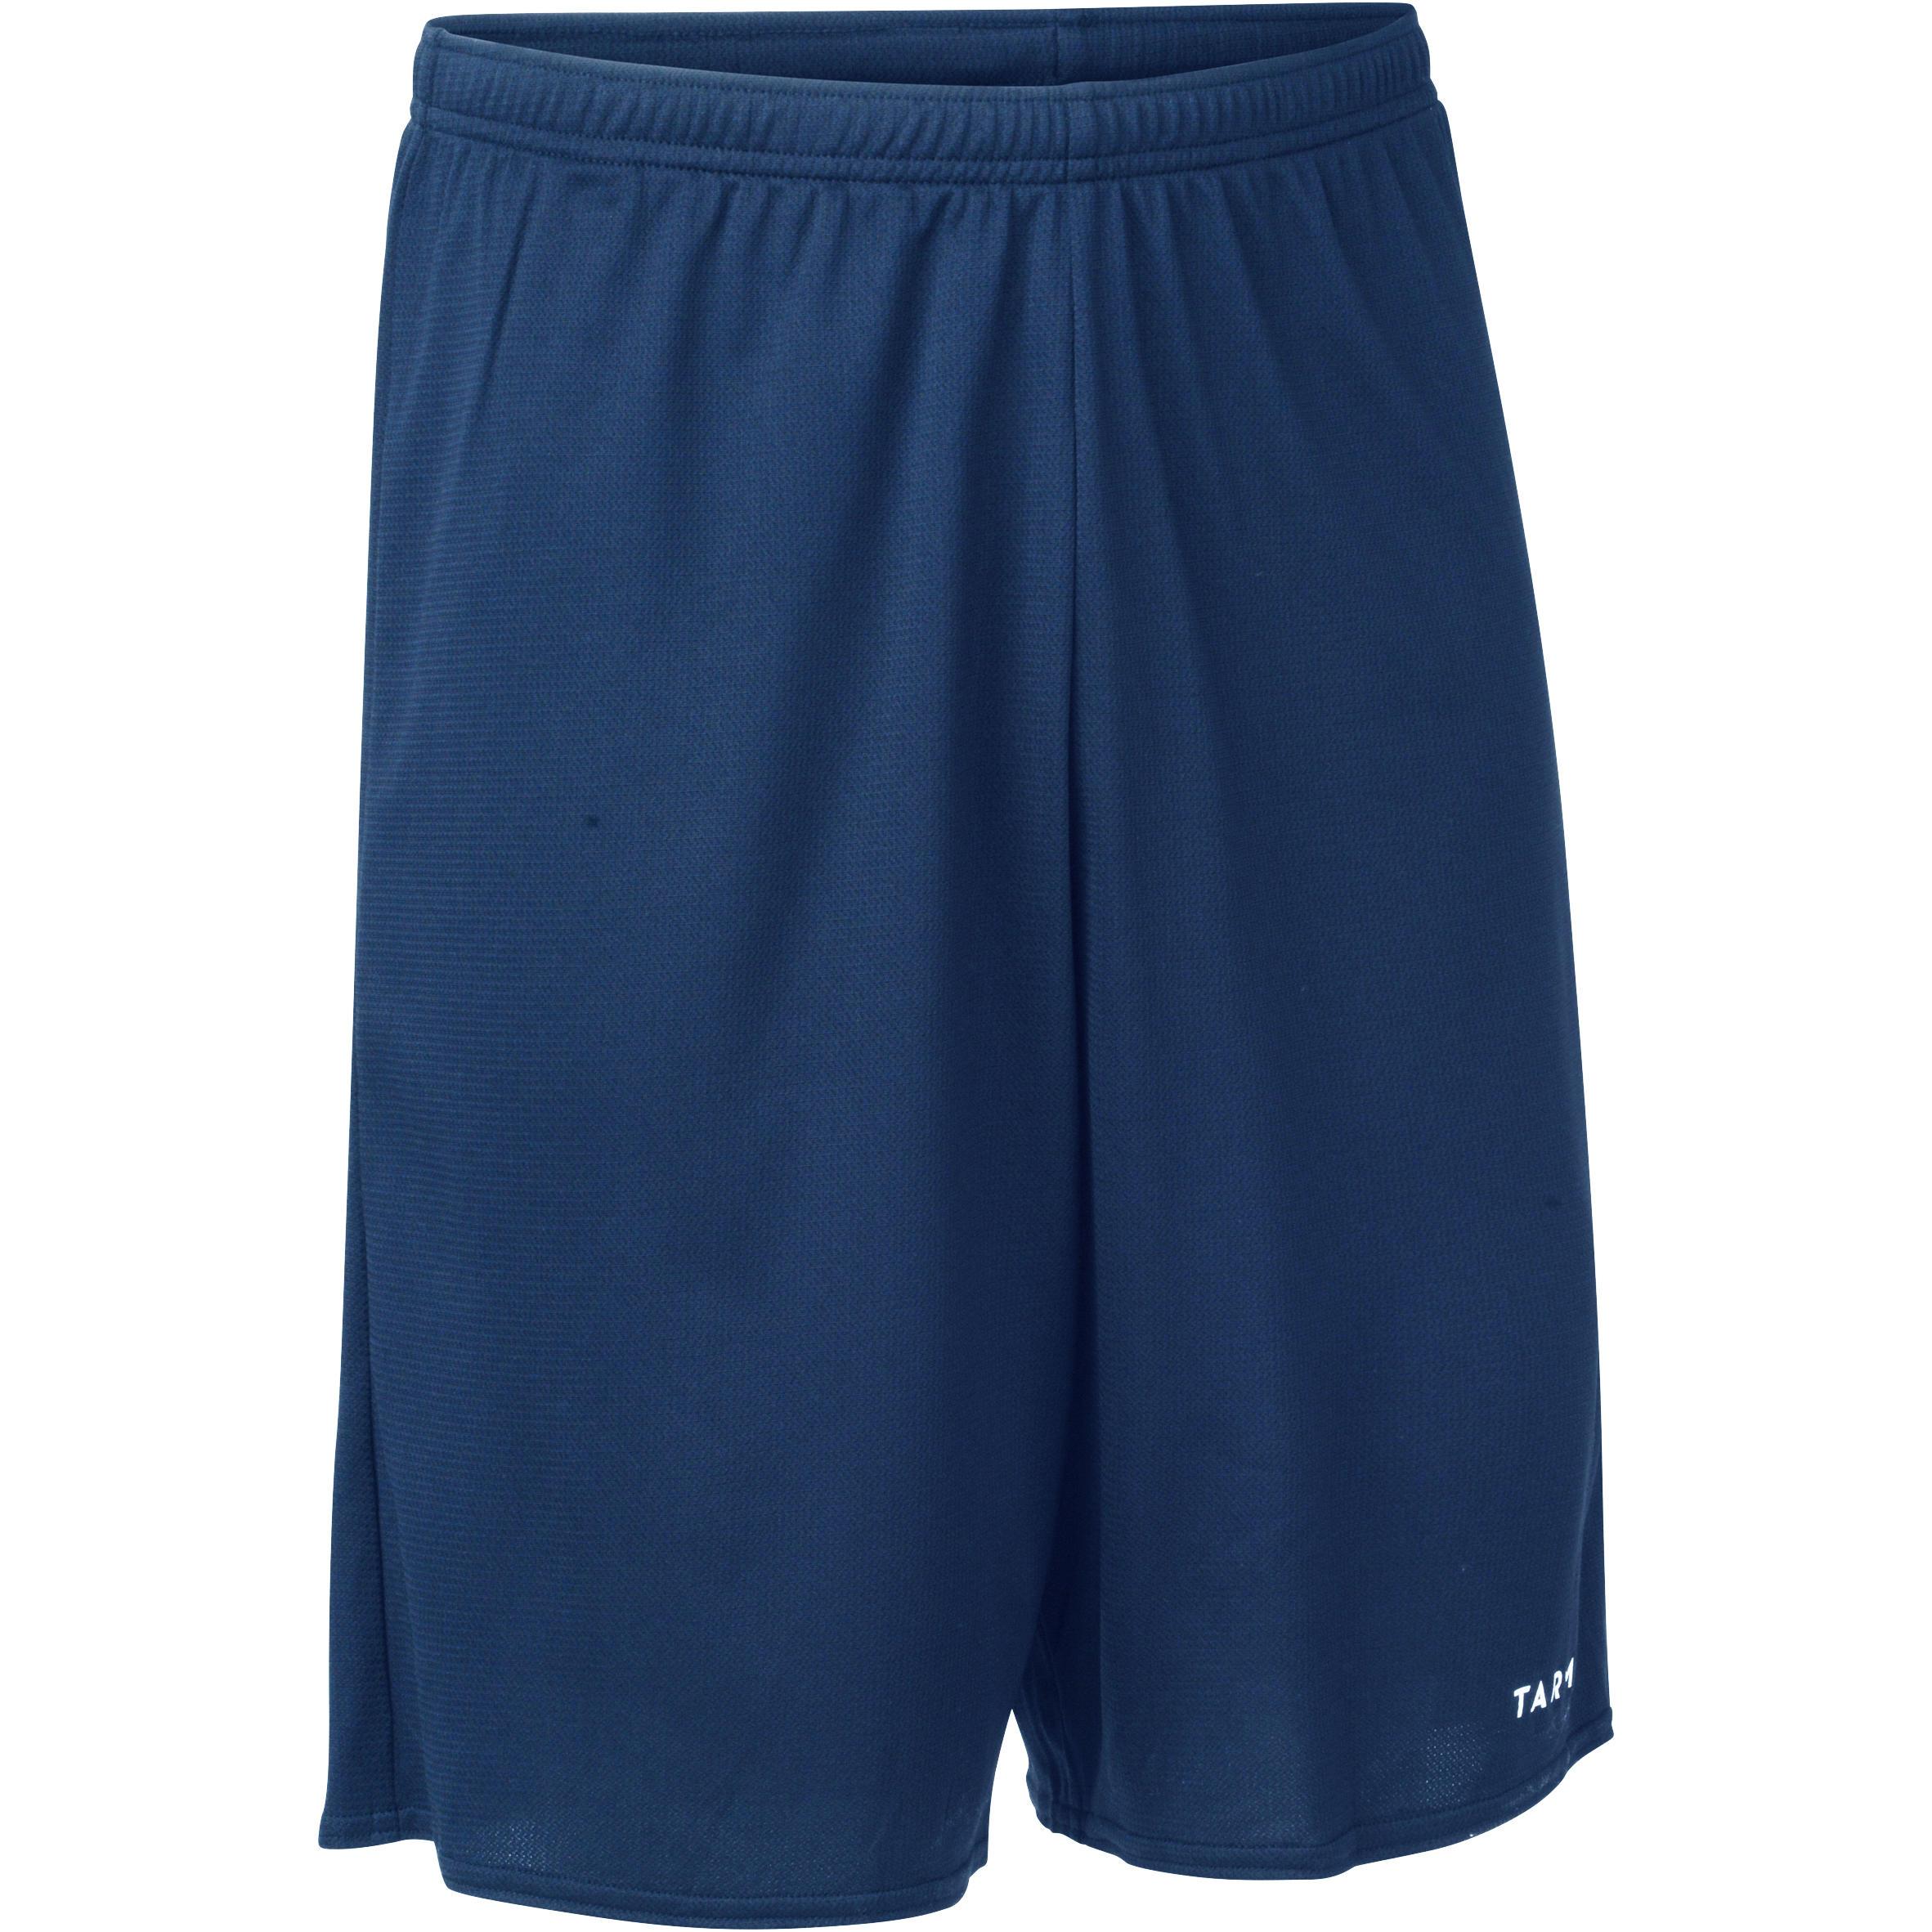 [ด่วน!! โปรโมชั่นมีจำนวนจำกัด]กางเกงบาสเก็ตบอลขาสั้นรุ่น B300 สำหรับผู้เล่นมือใหม่ (สีฟ้า)